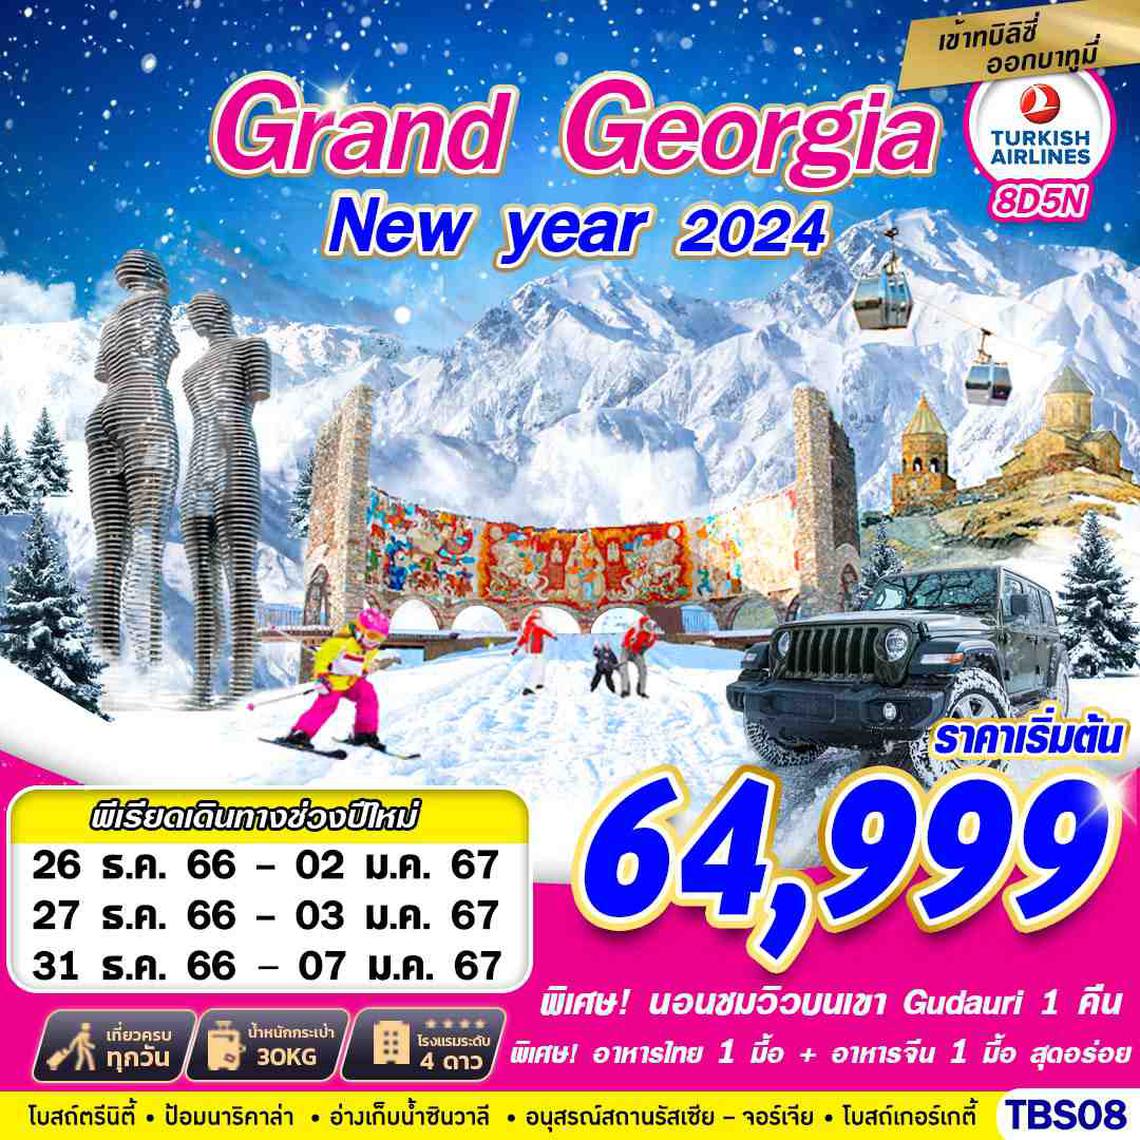 ทัวร์จอร์เจีย GRAND GEORGIA NEW YEAR 2024 BY TK 8D5N